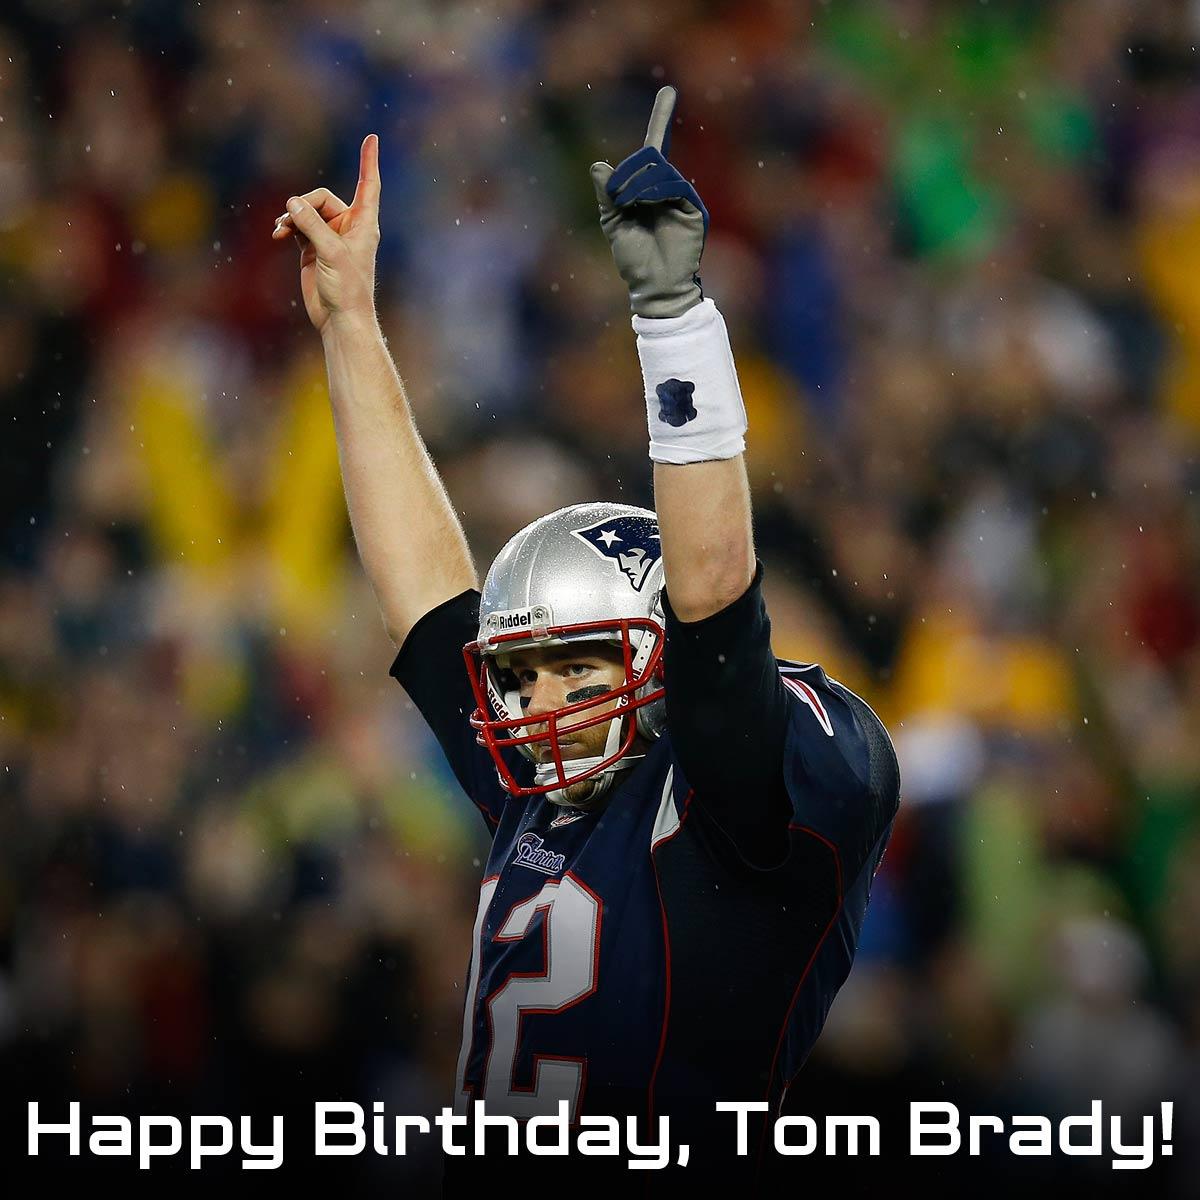 "to wish Tom Brady a Happy Birthday!! 